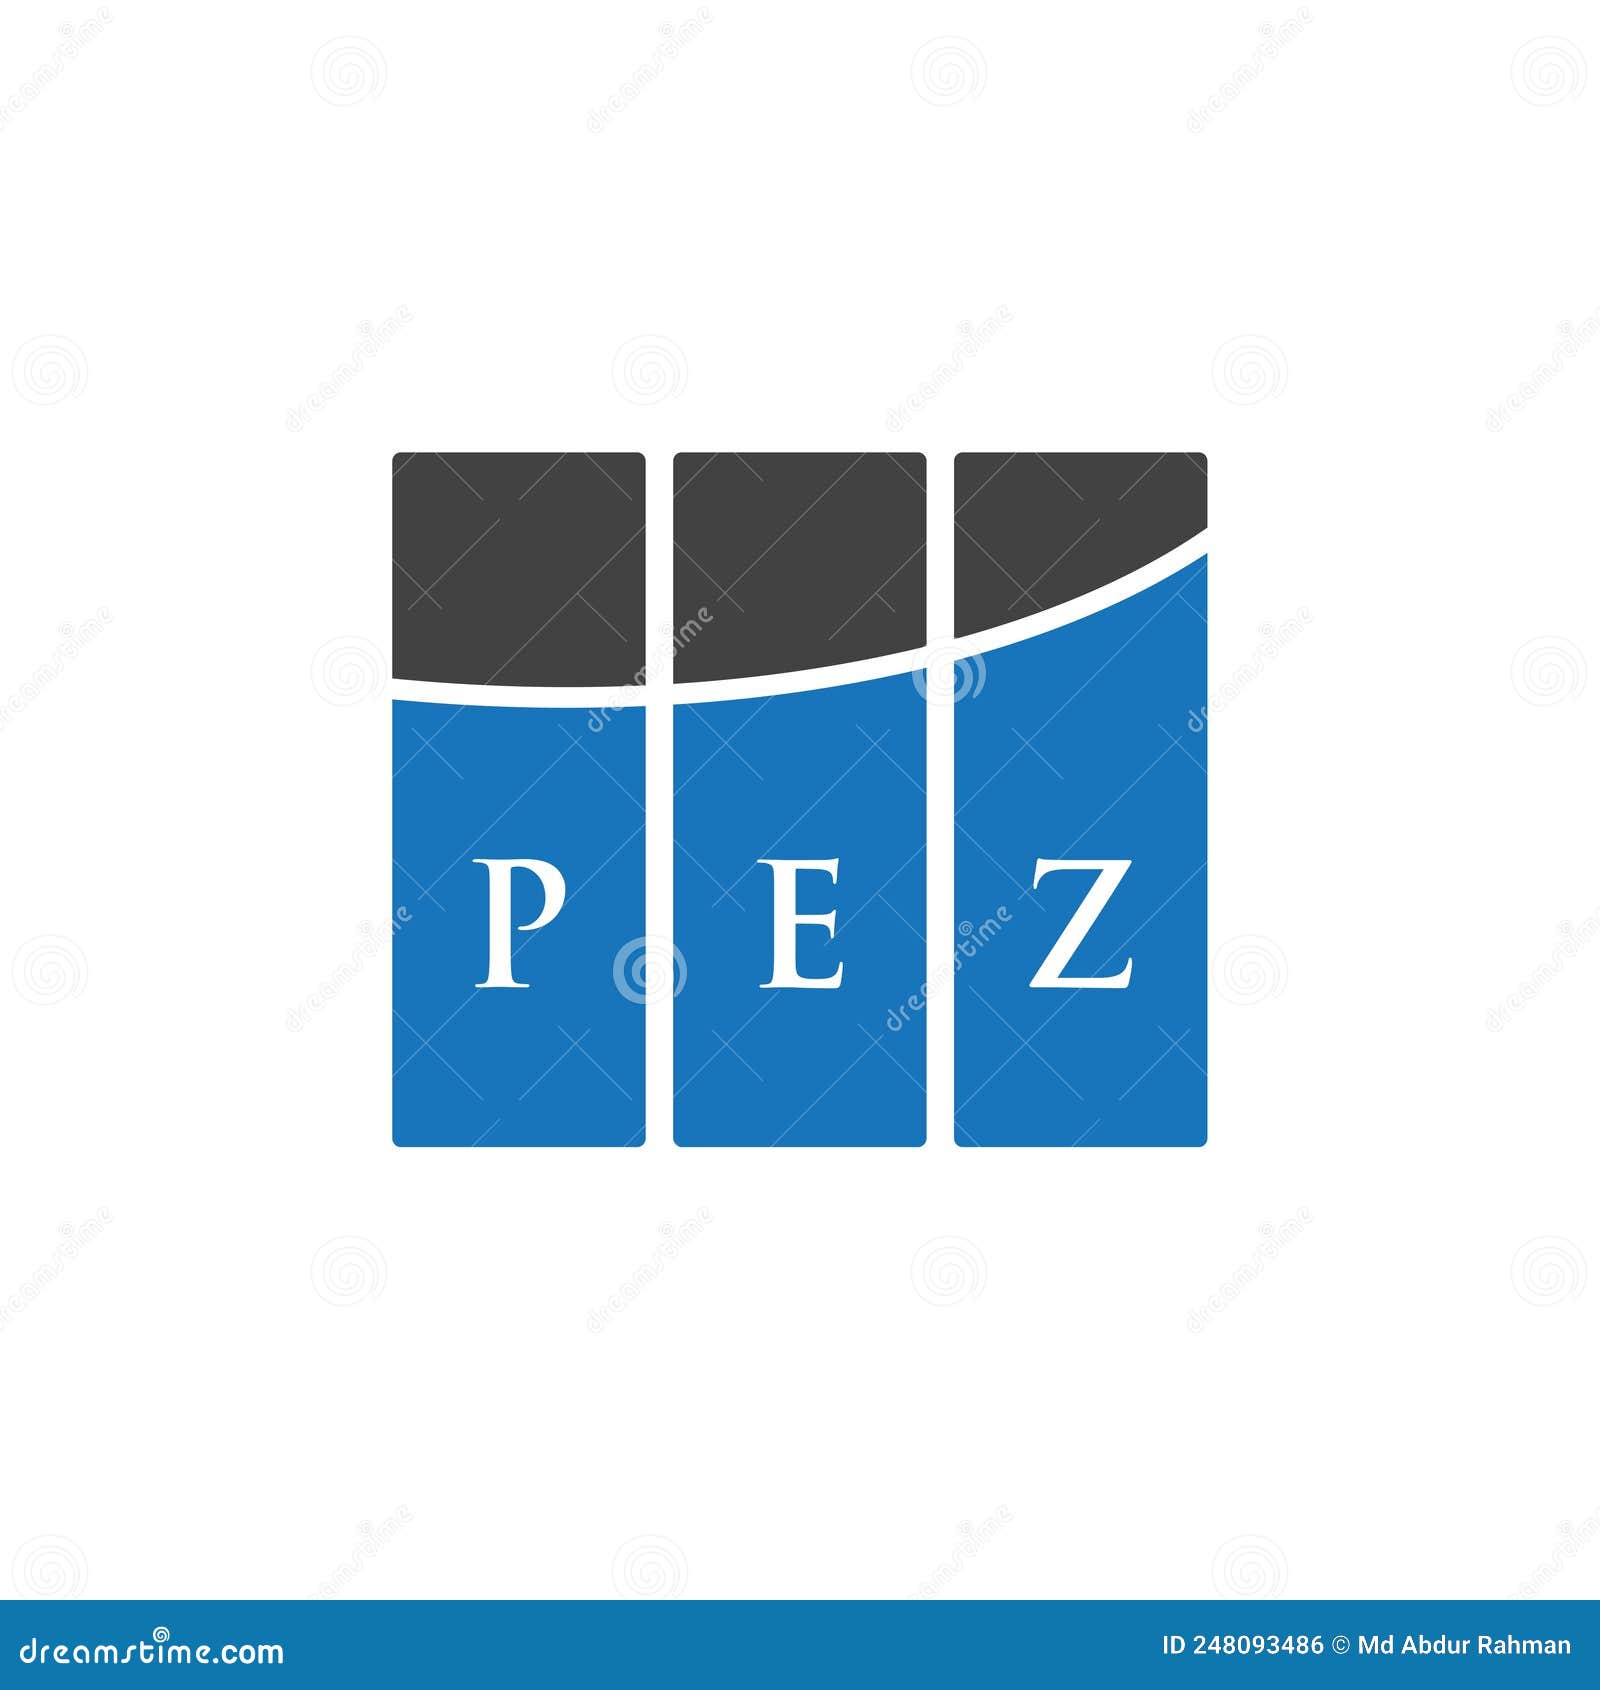 pez letter logo  on white background. pez creative initials letter logo concept. pez letter 